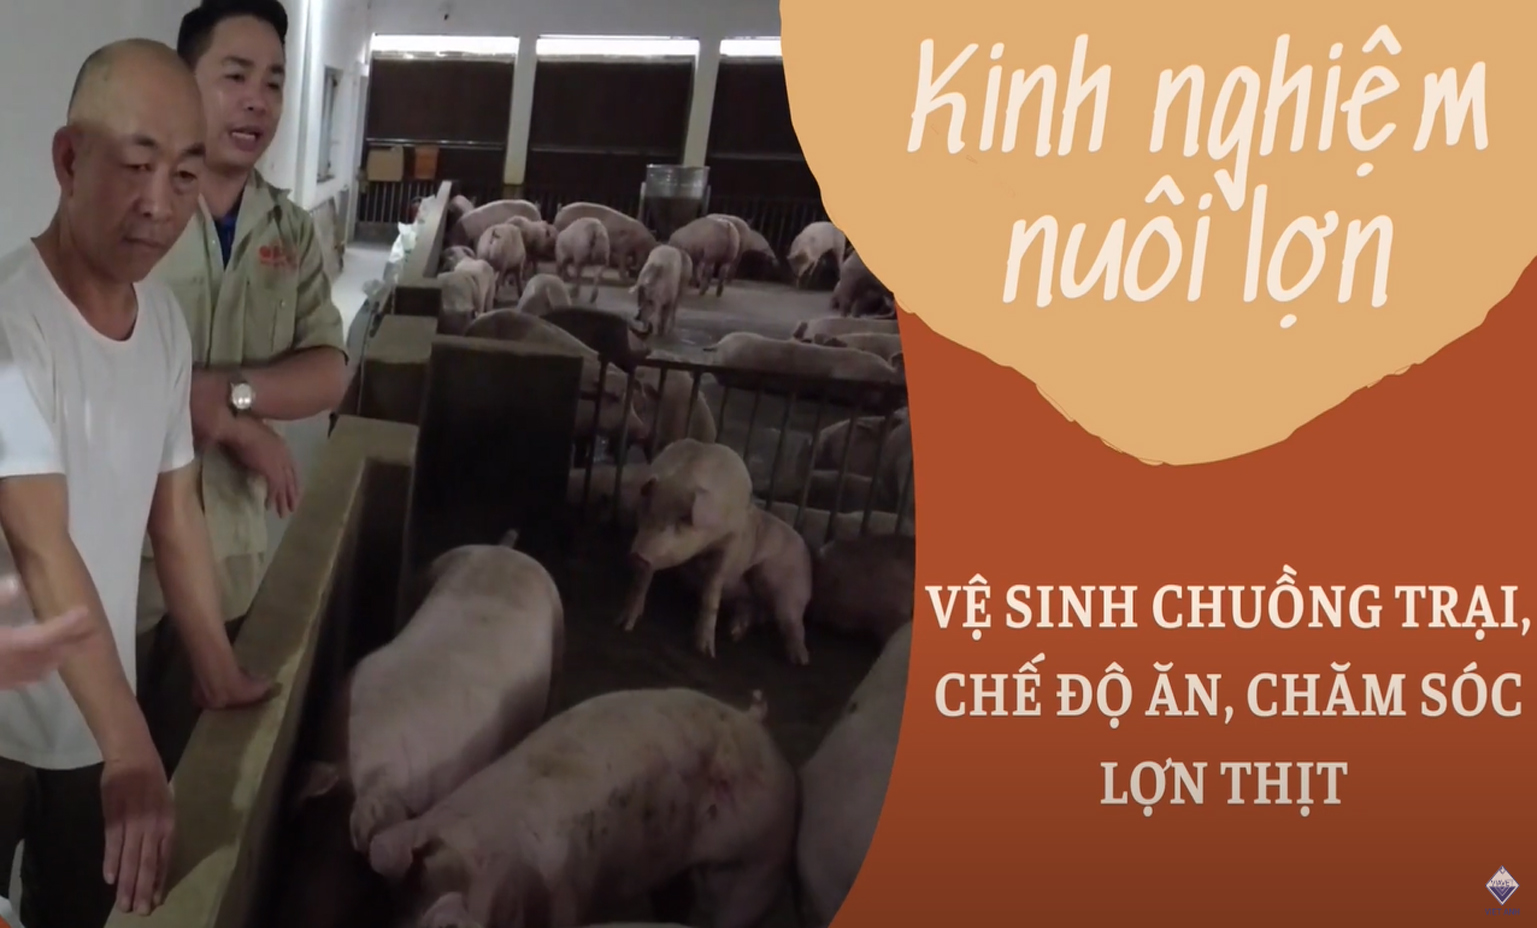 Vệ sinh chuồng trại, chế độ ăn và chăm sóc sức khỏe lợn thịt